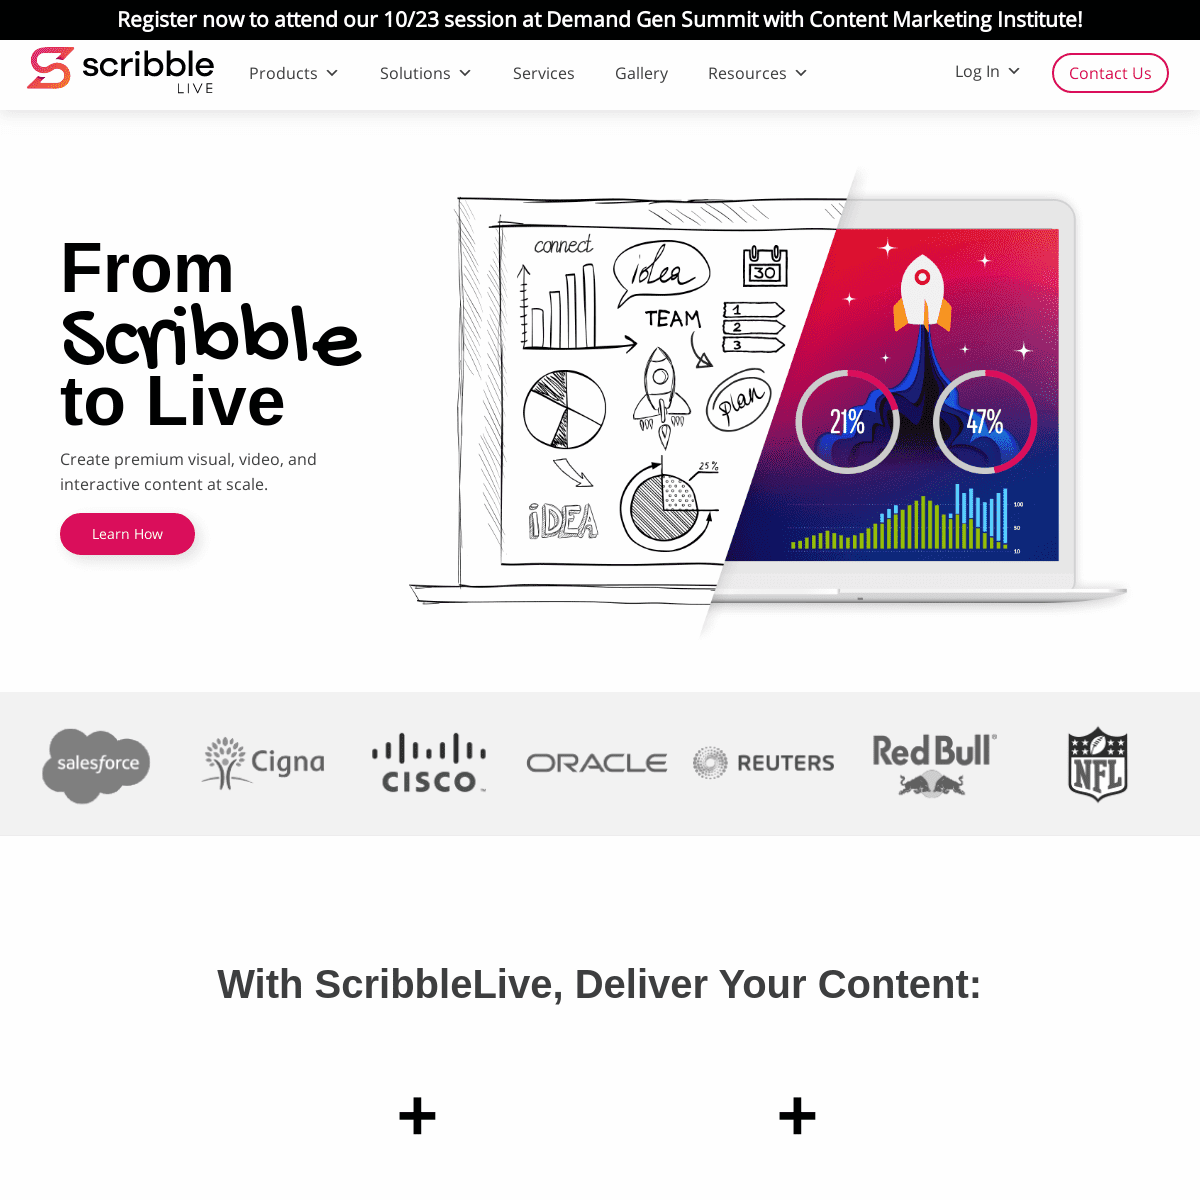 A complete backup of scribblelive.com